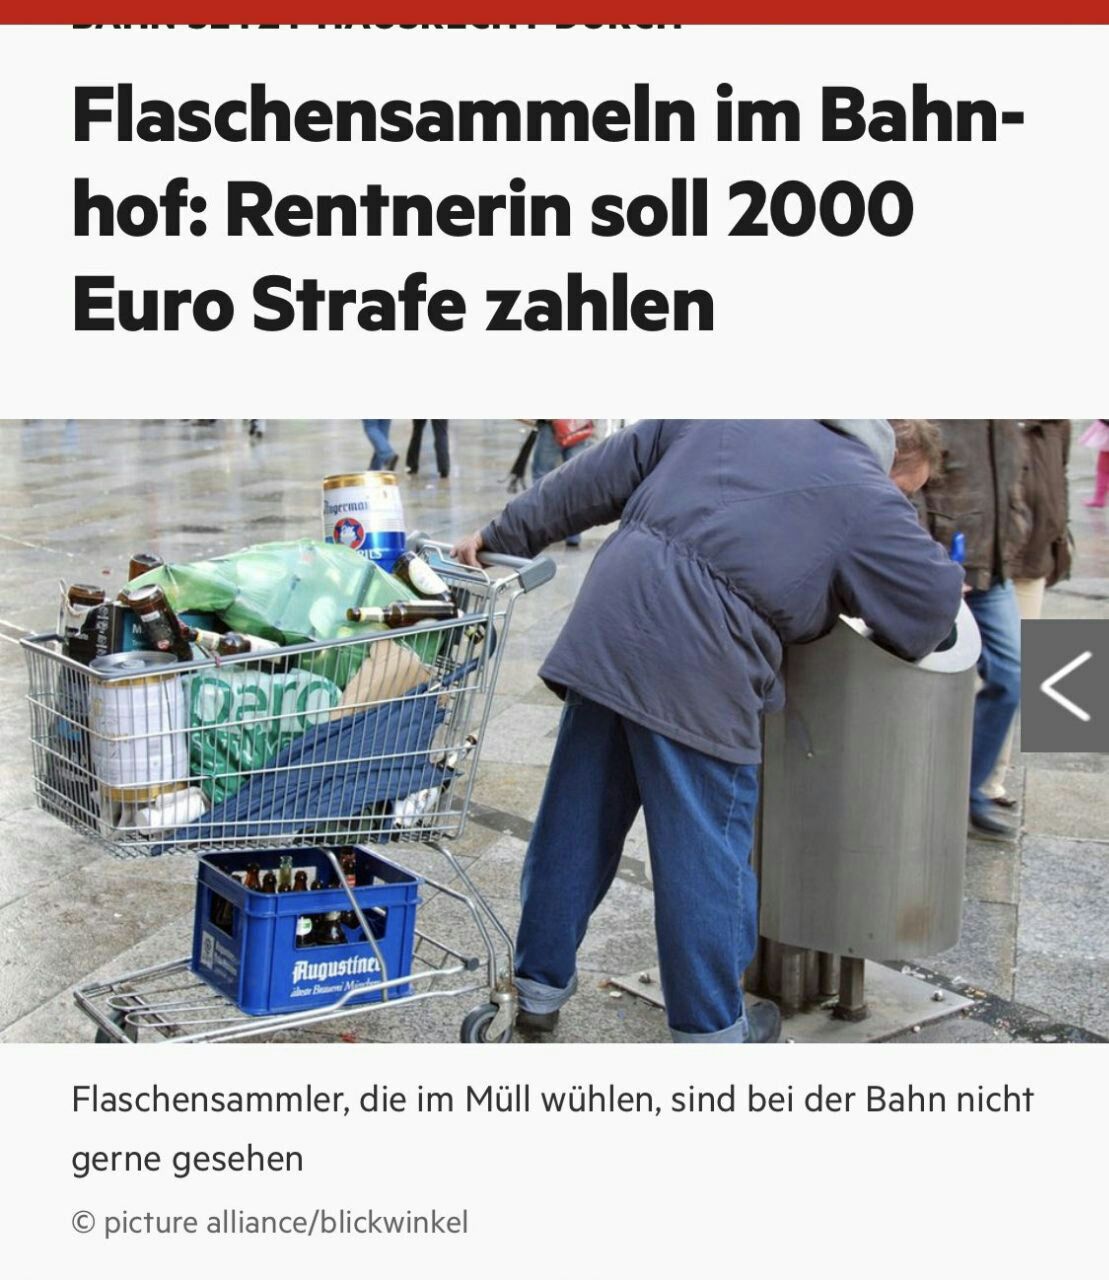 اینجا اروپا،کسانی که آشغال جمع میکنند چون کار سیاه محسوب میشه و بابتش مالیات نمیدن ۲هزار یورو جریمه می‌کنه